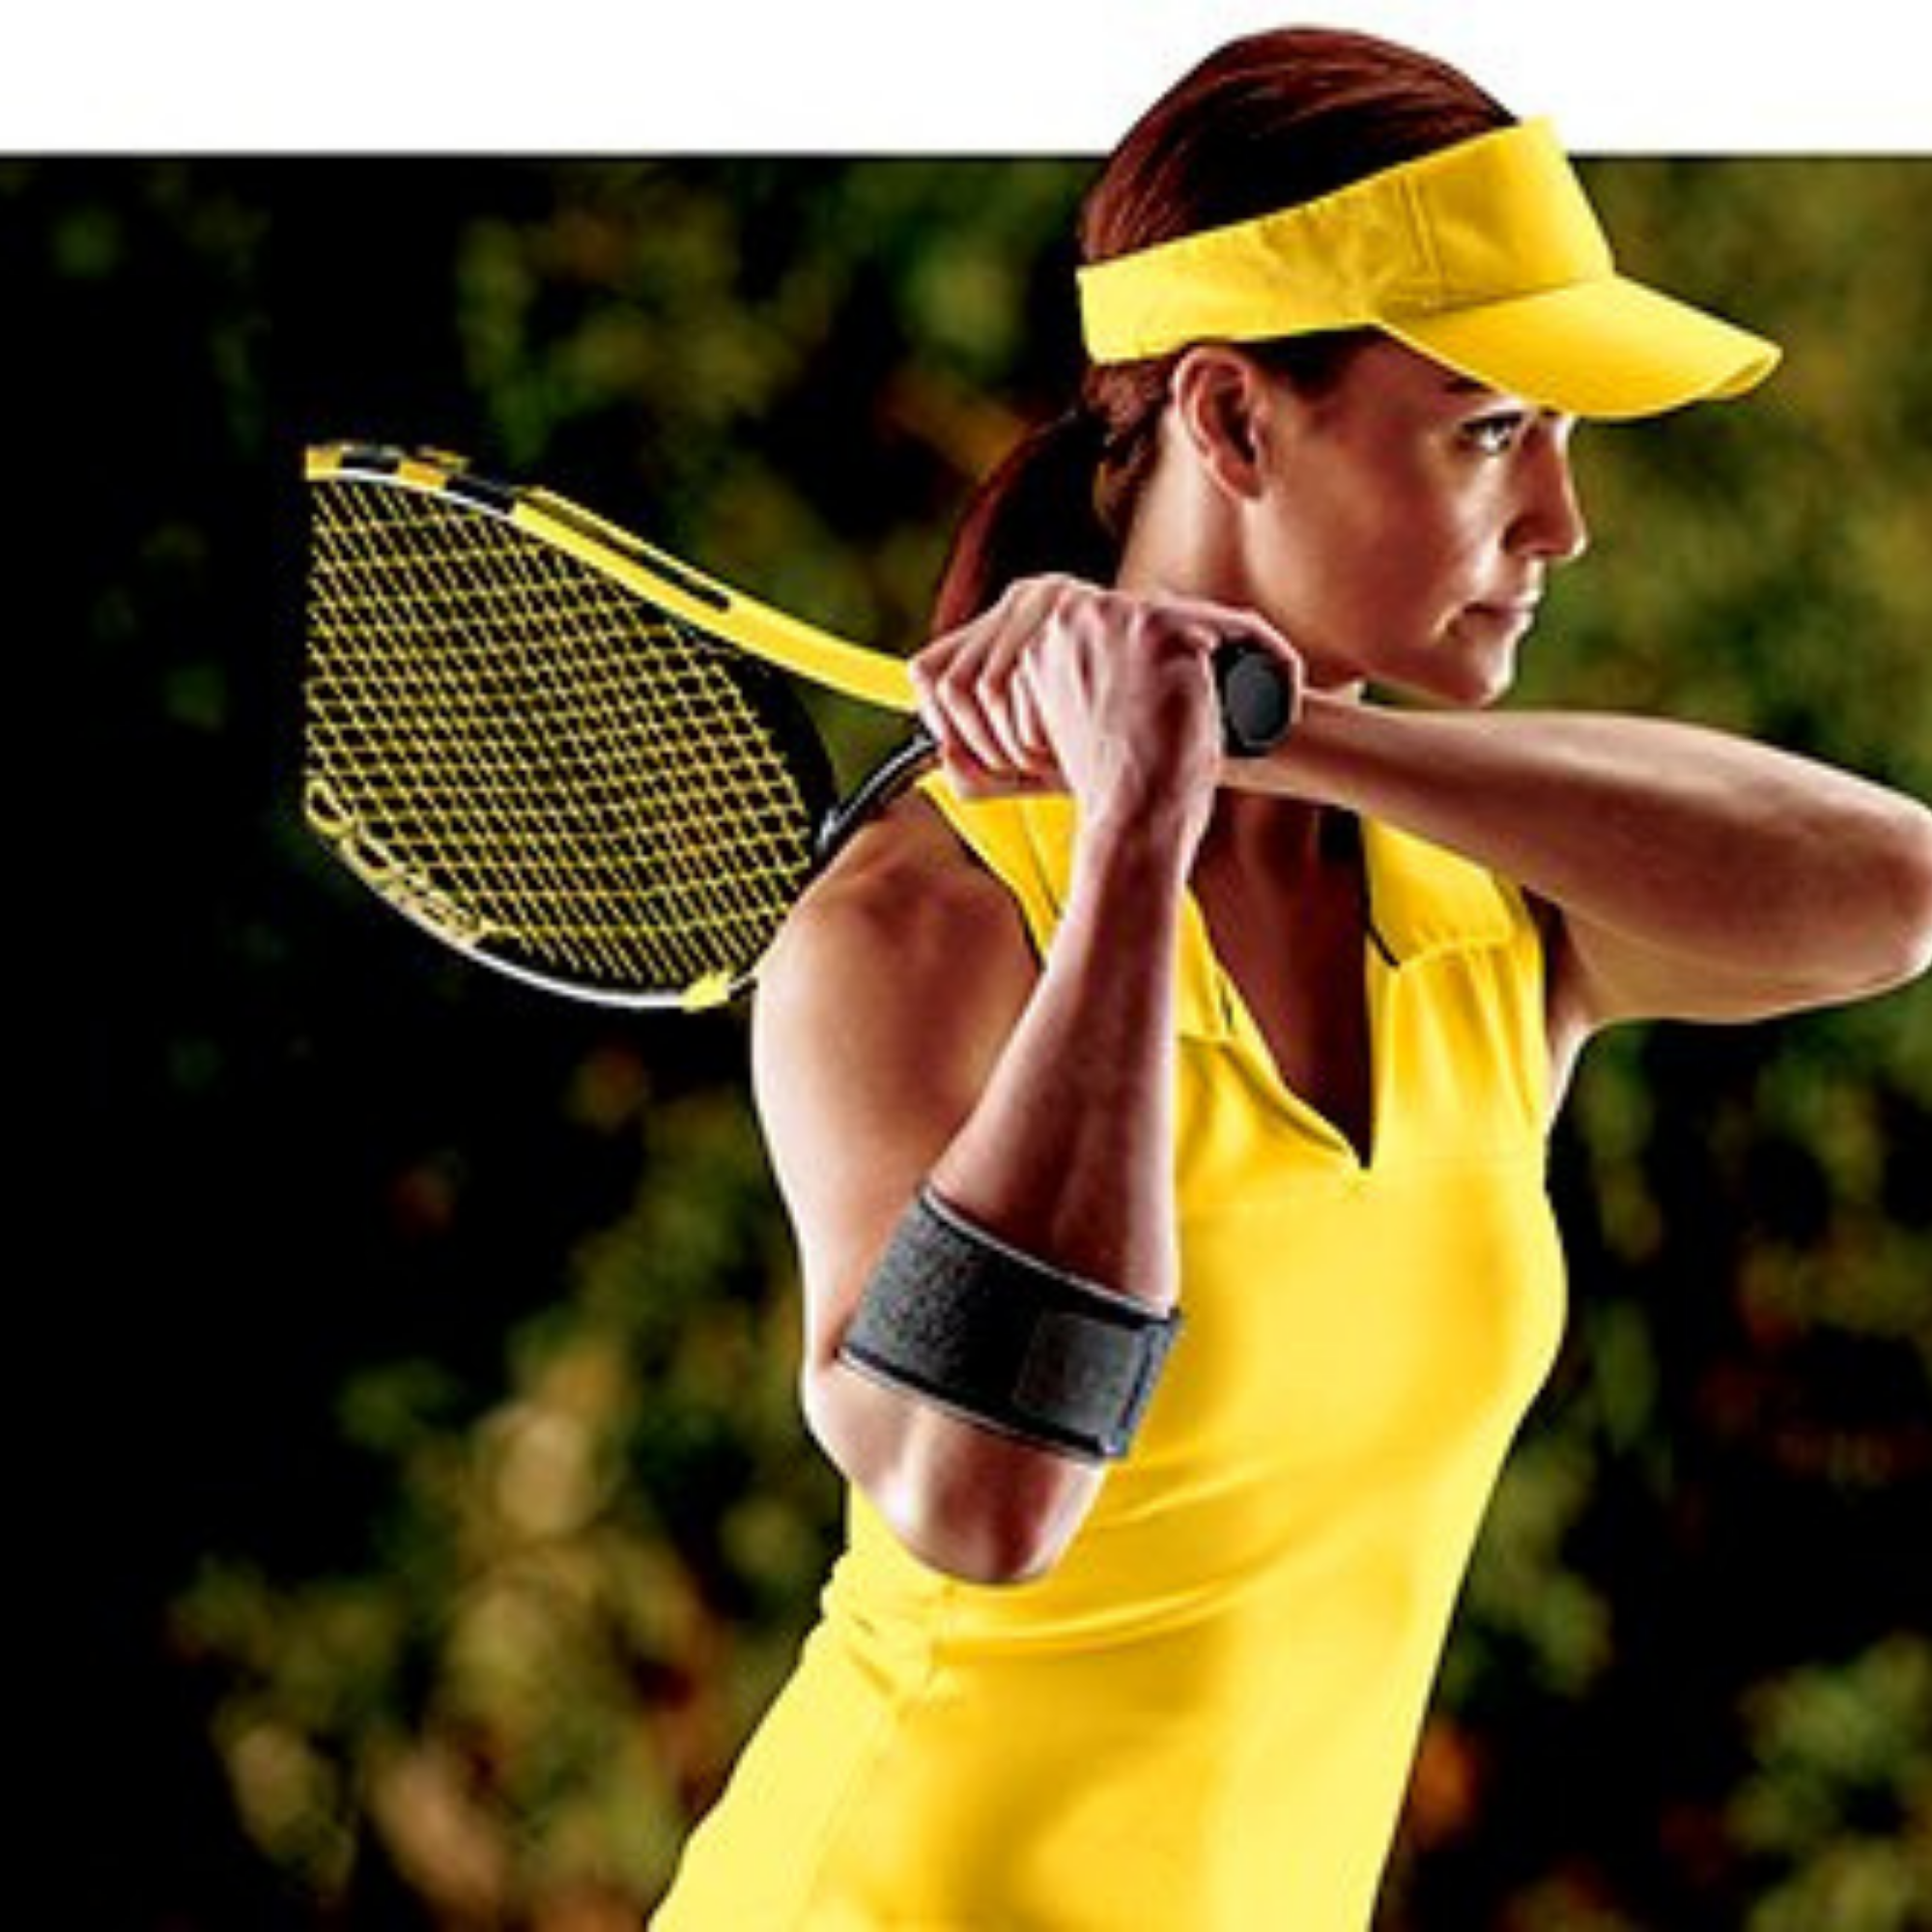 Futuro Tennis Elbow Strap 45975ENR Adjustable